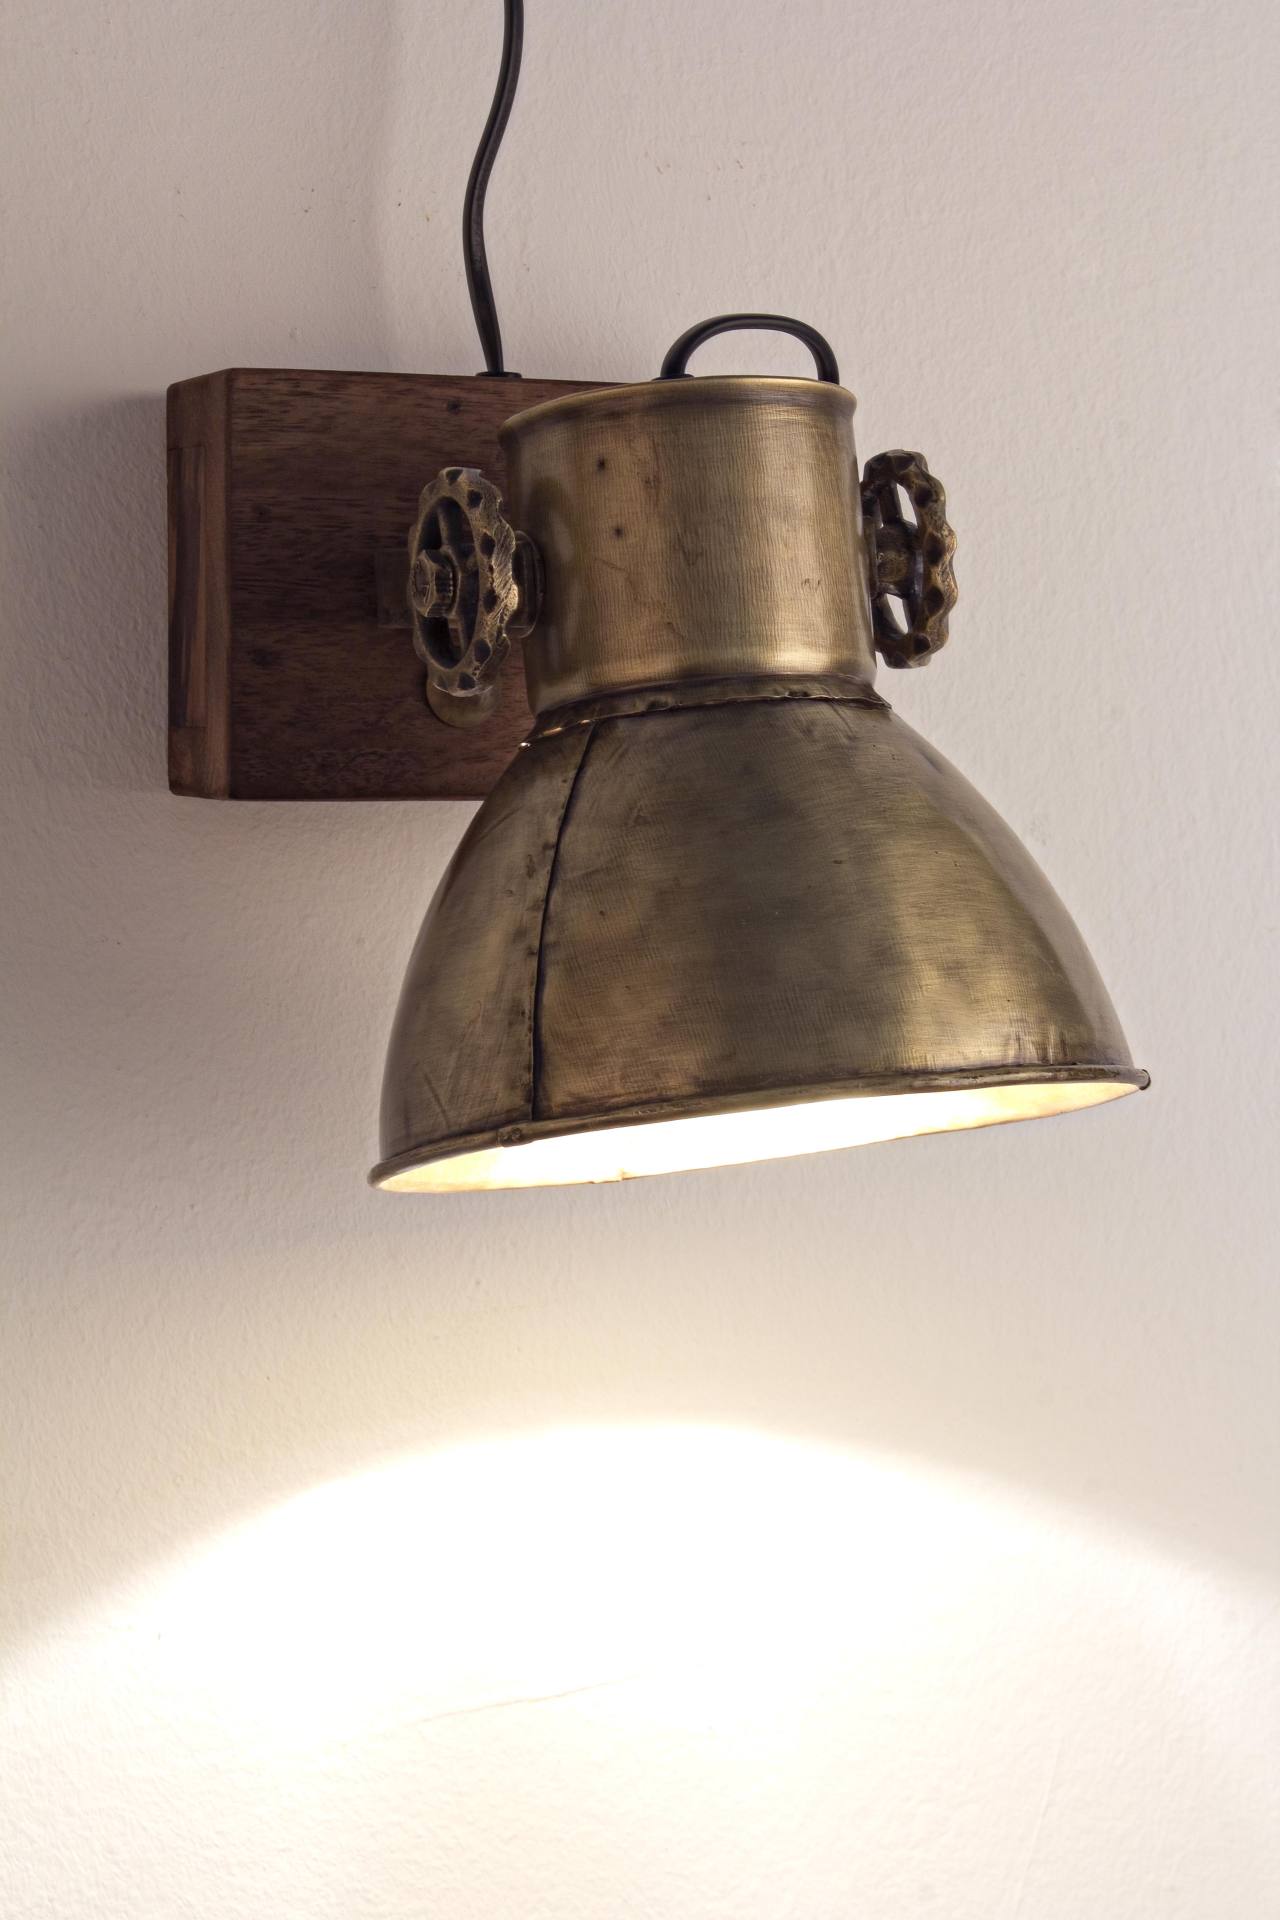 Die Wandleuchte Appllique überzeugt mit ihrem klassischen Design. Gefertigt wurde sie aus Mangoholz, welches einen natürlichen Farbton besitzt. Der Lampenschirm ist aus Metall und hat eine goldene Farbe. Die Lampe besitzt eine Höhe von 27 cm.